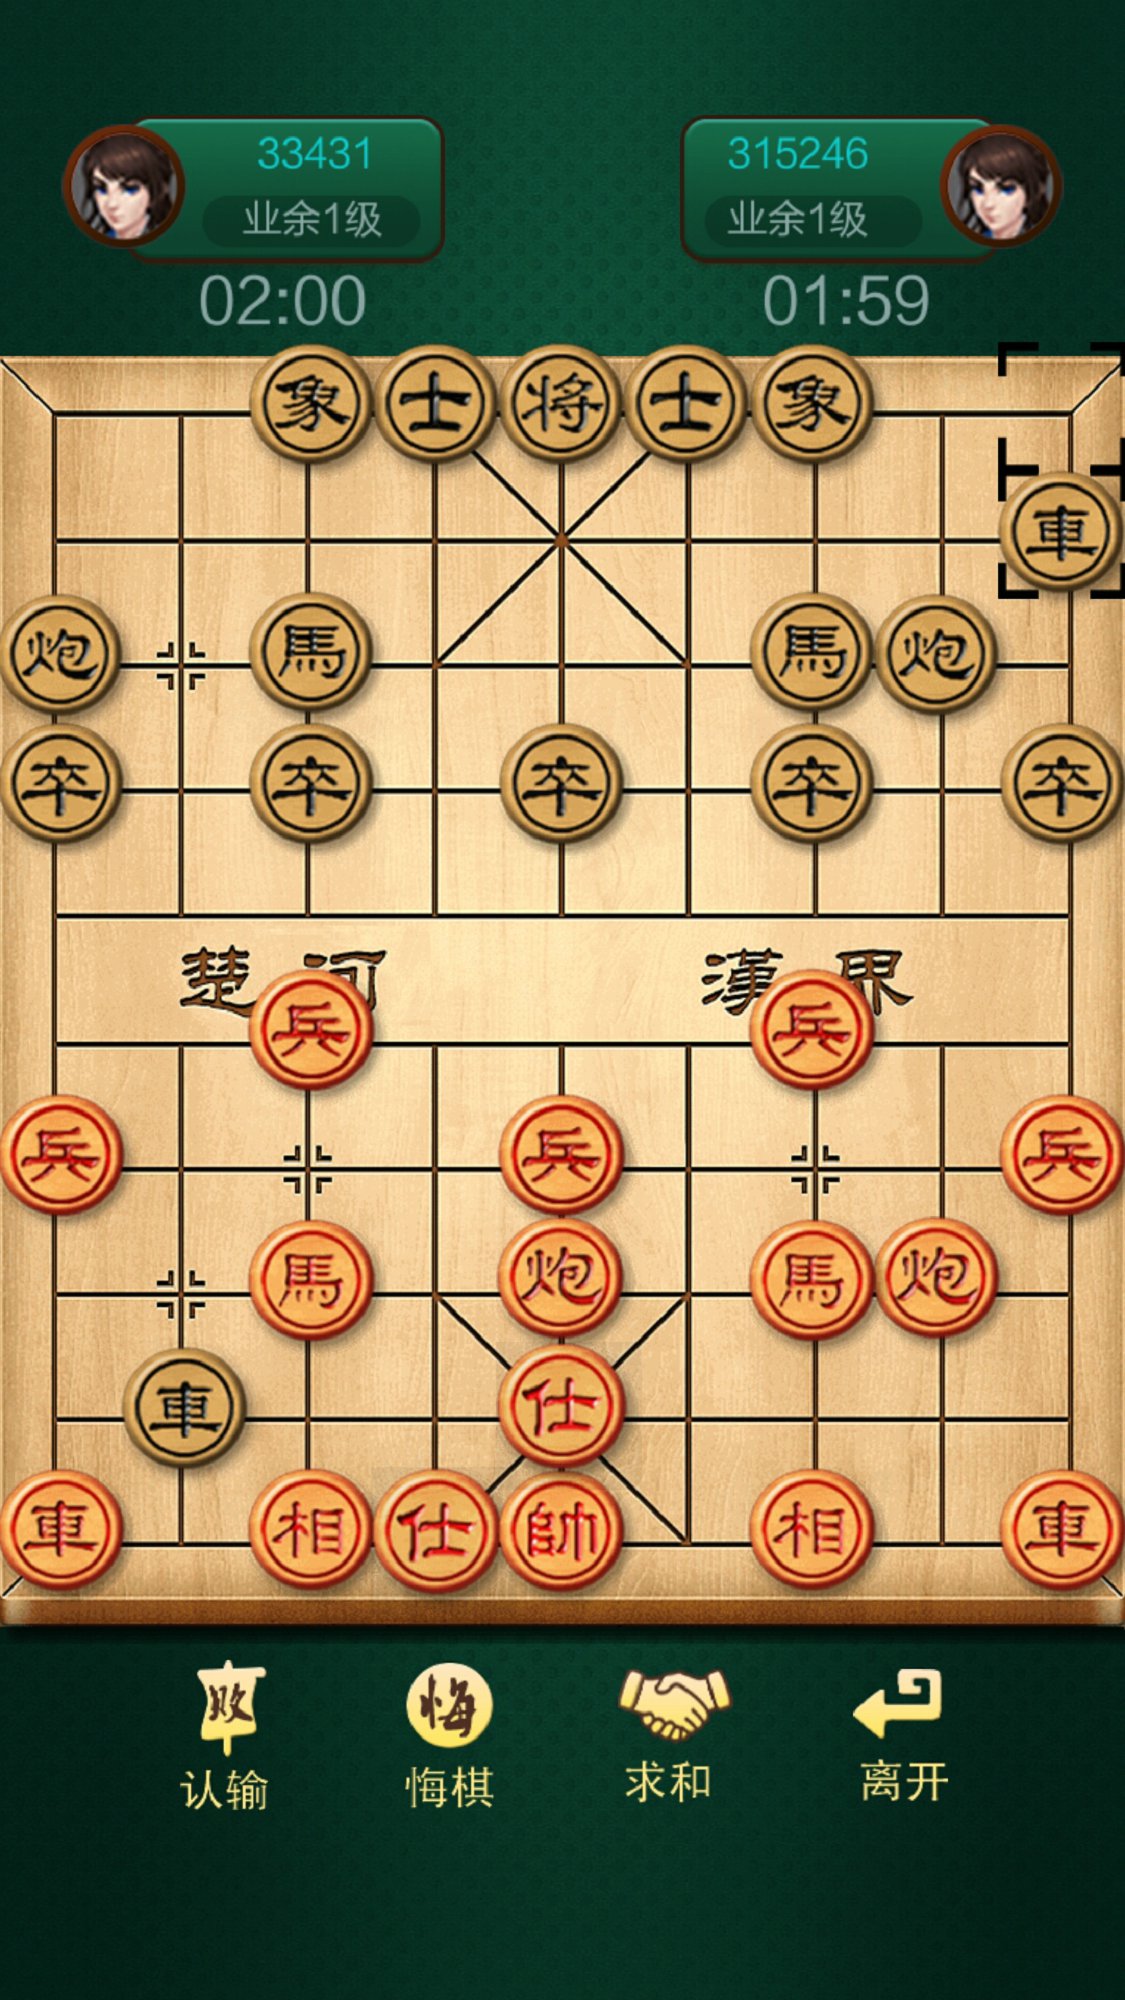 中国象棋联机安卓版游戏 v1.0.1截图